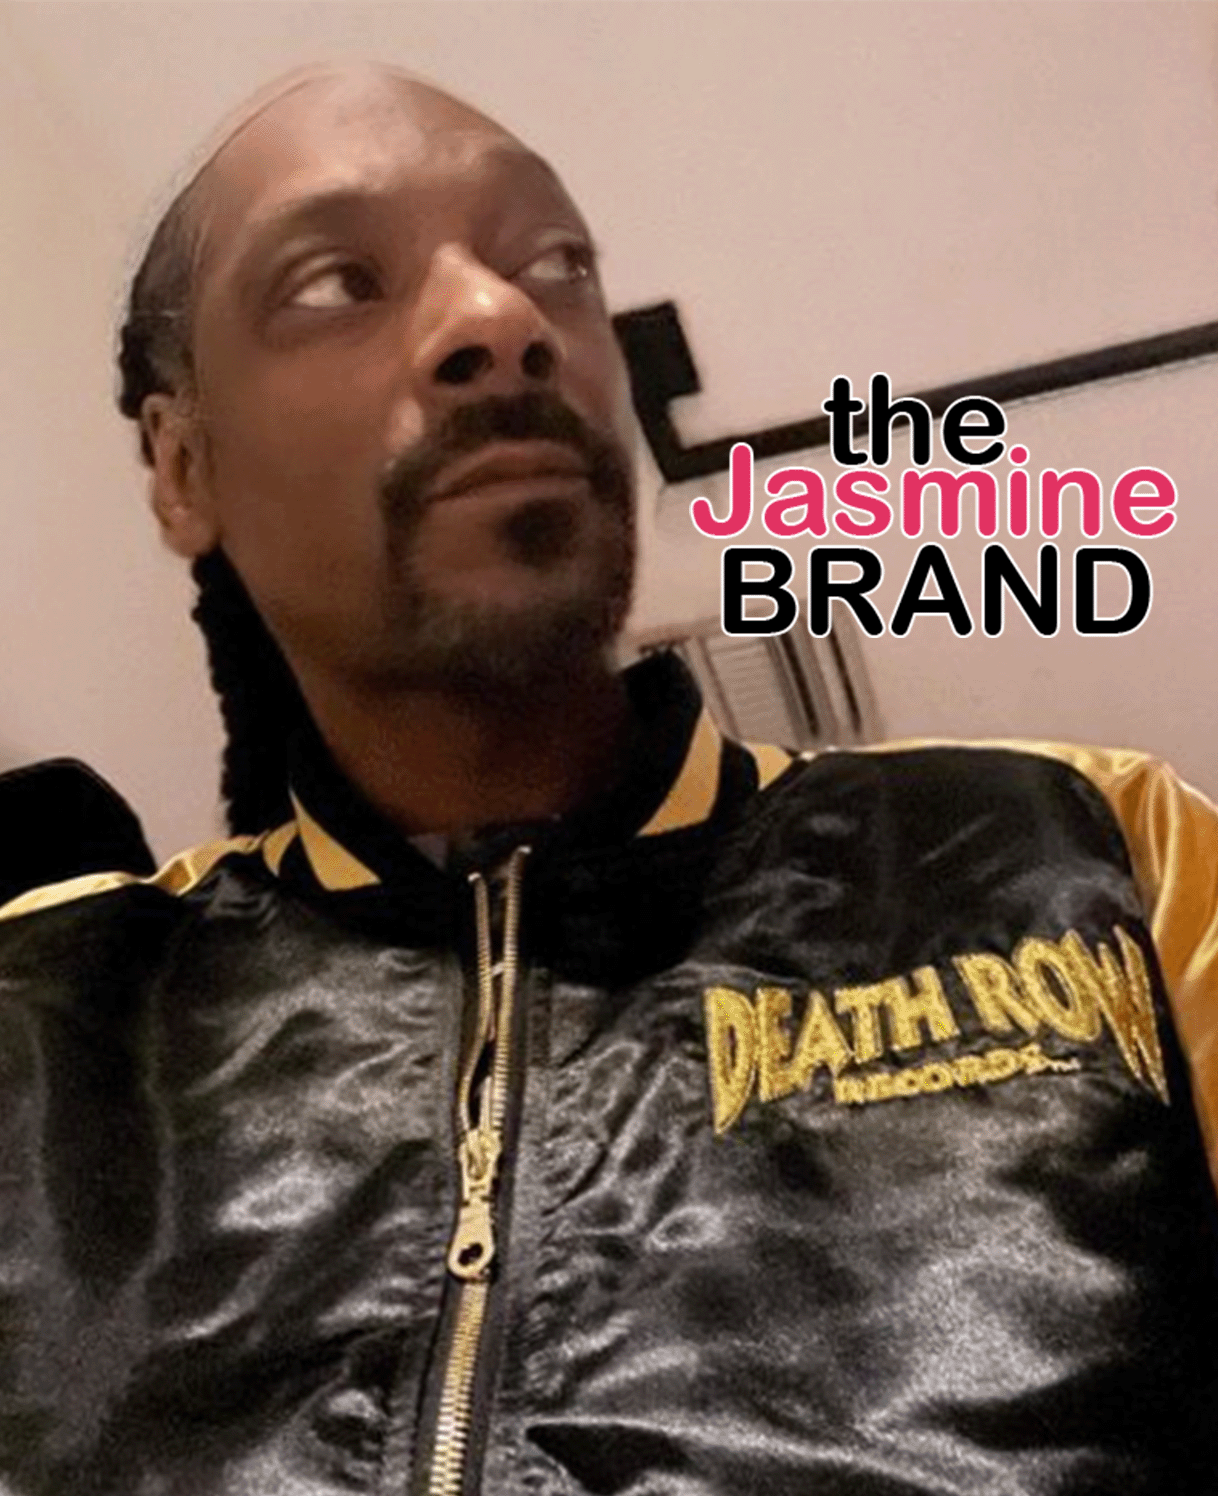 Snoop Dogg Raises His Blunt Roller's $50,000 Salary - XXL